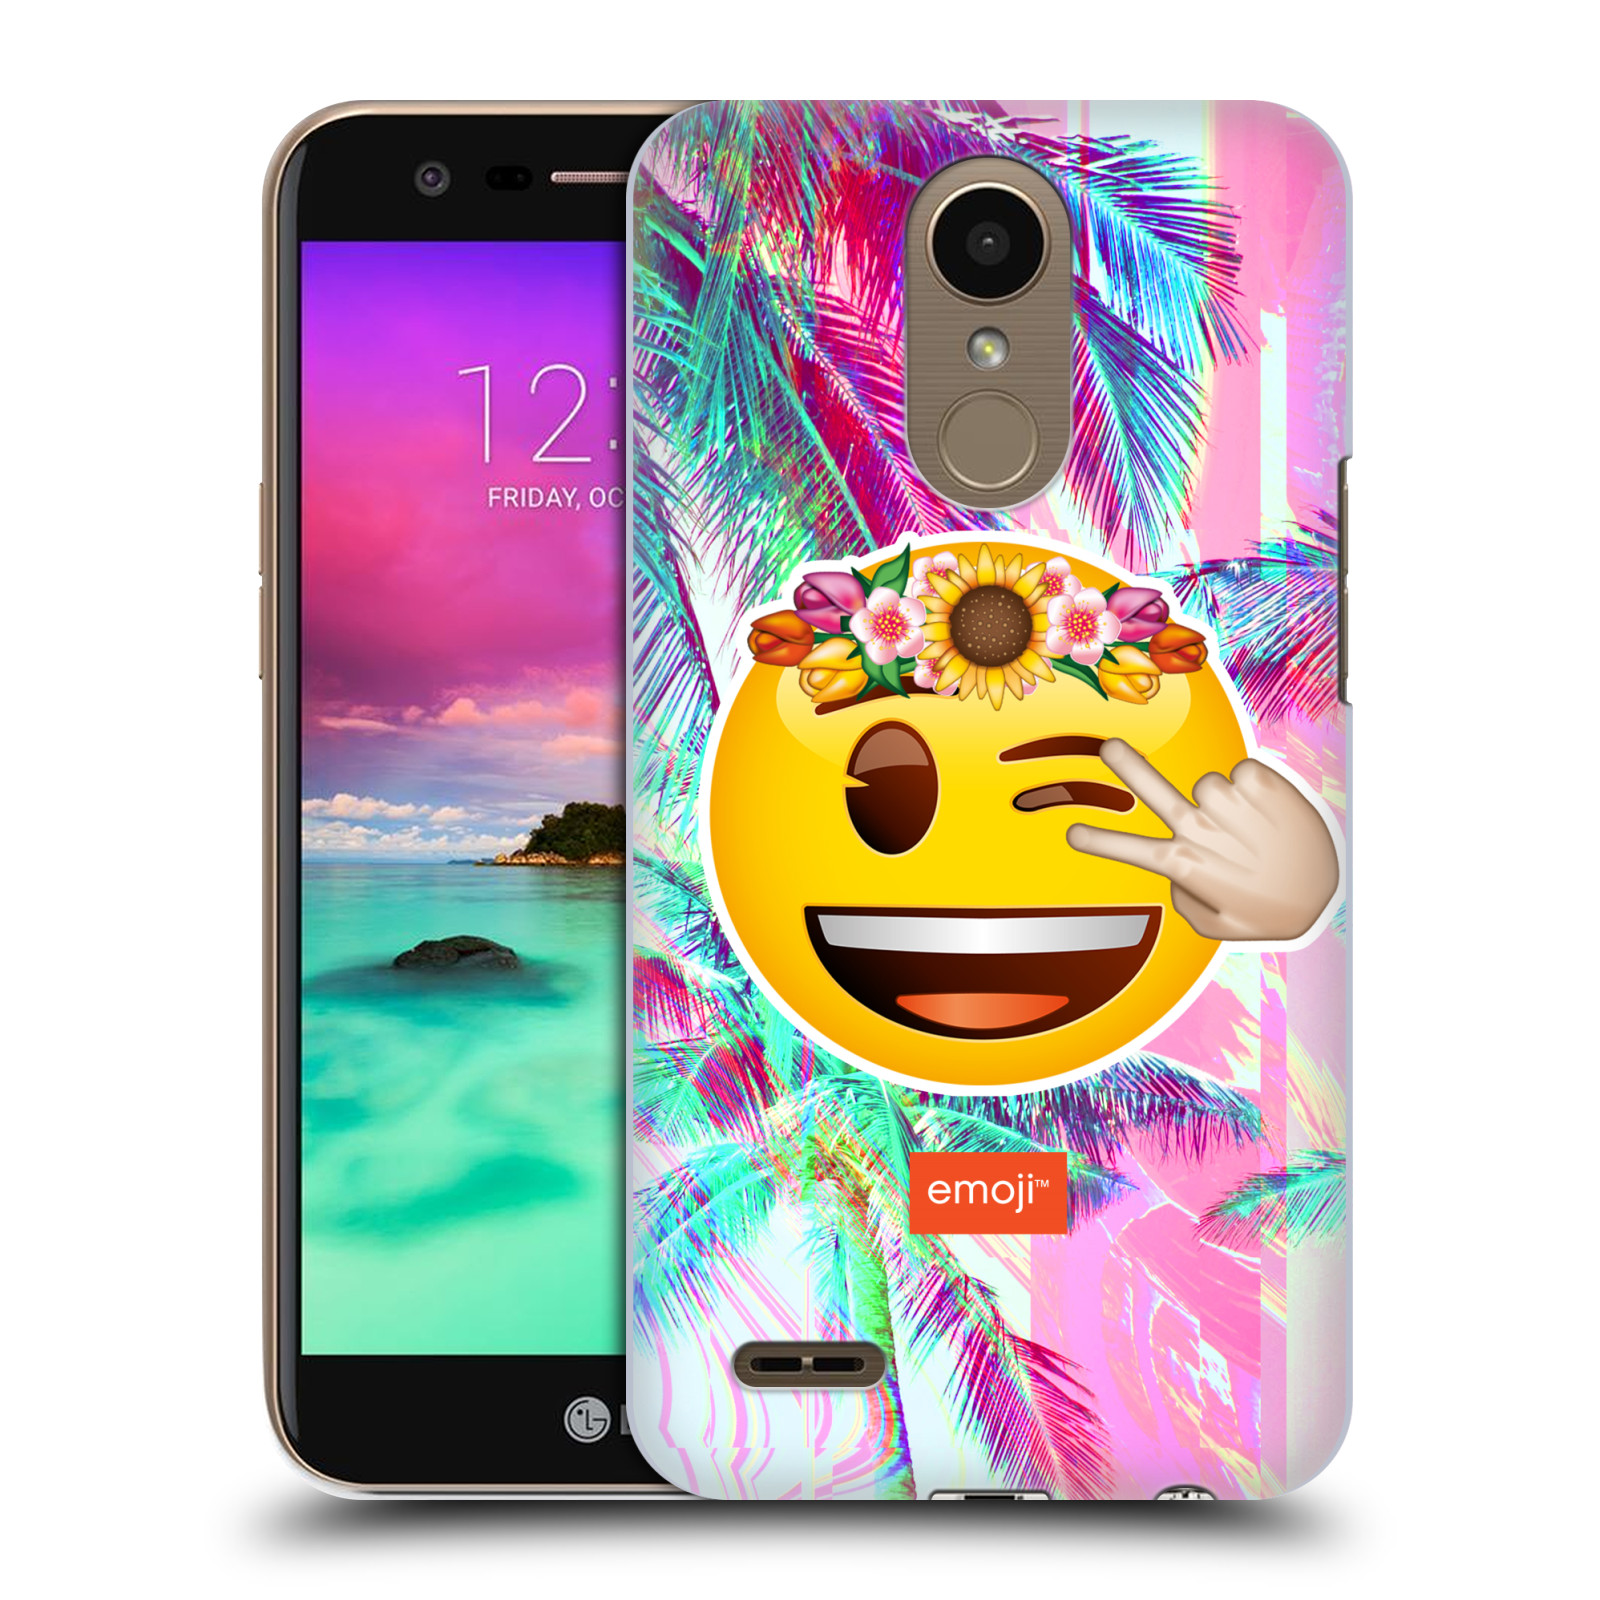 Pouzdro na mobil LG K10 2017 / K10 2017 DUAL SIM - HEAD CASE - Emoji smajlík palmy a květiny